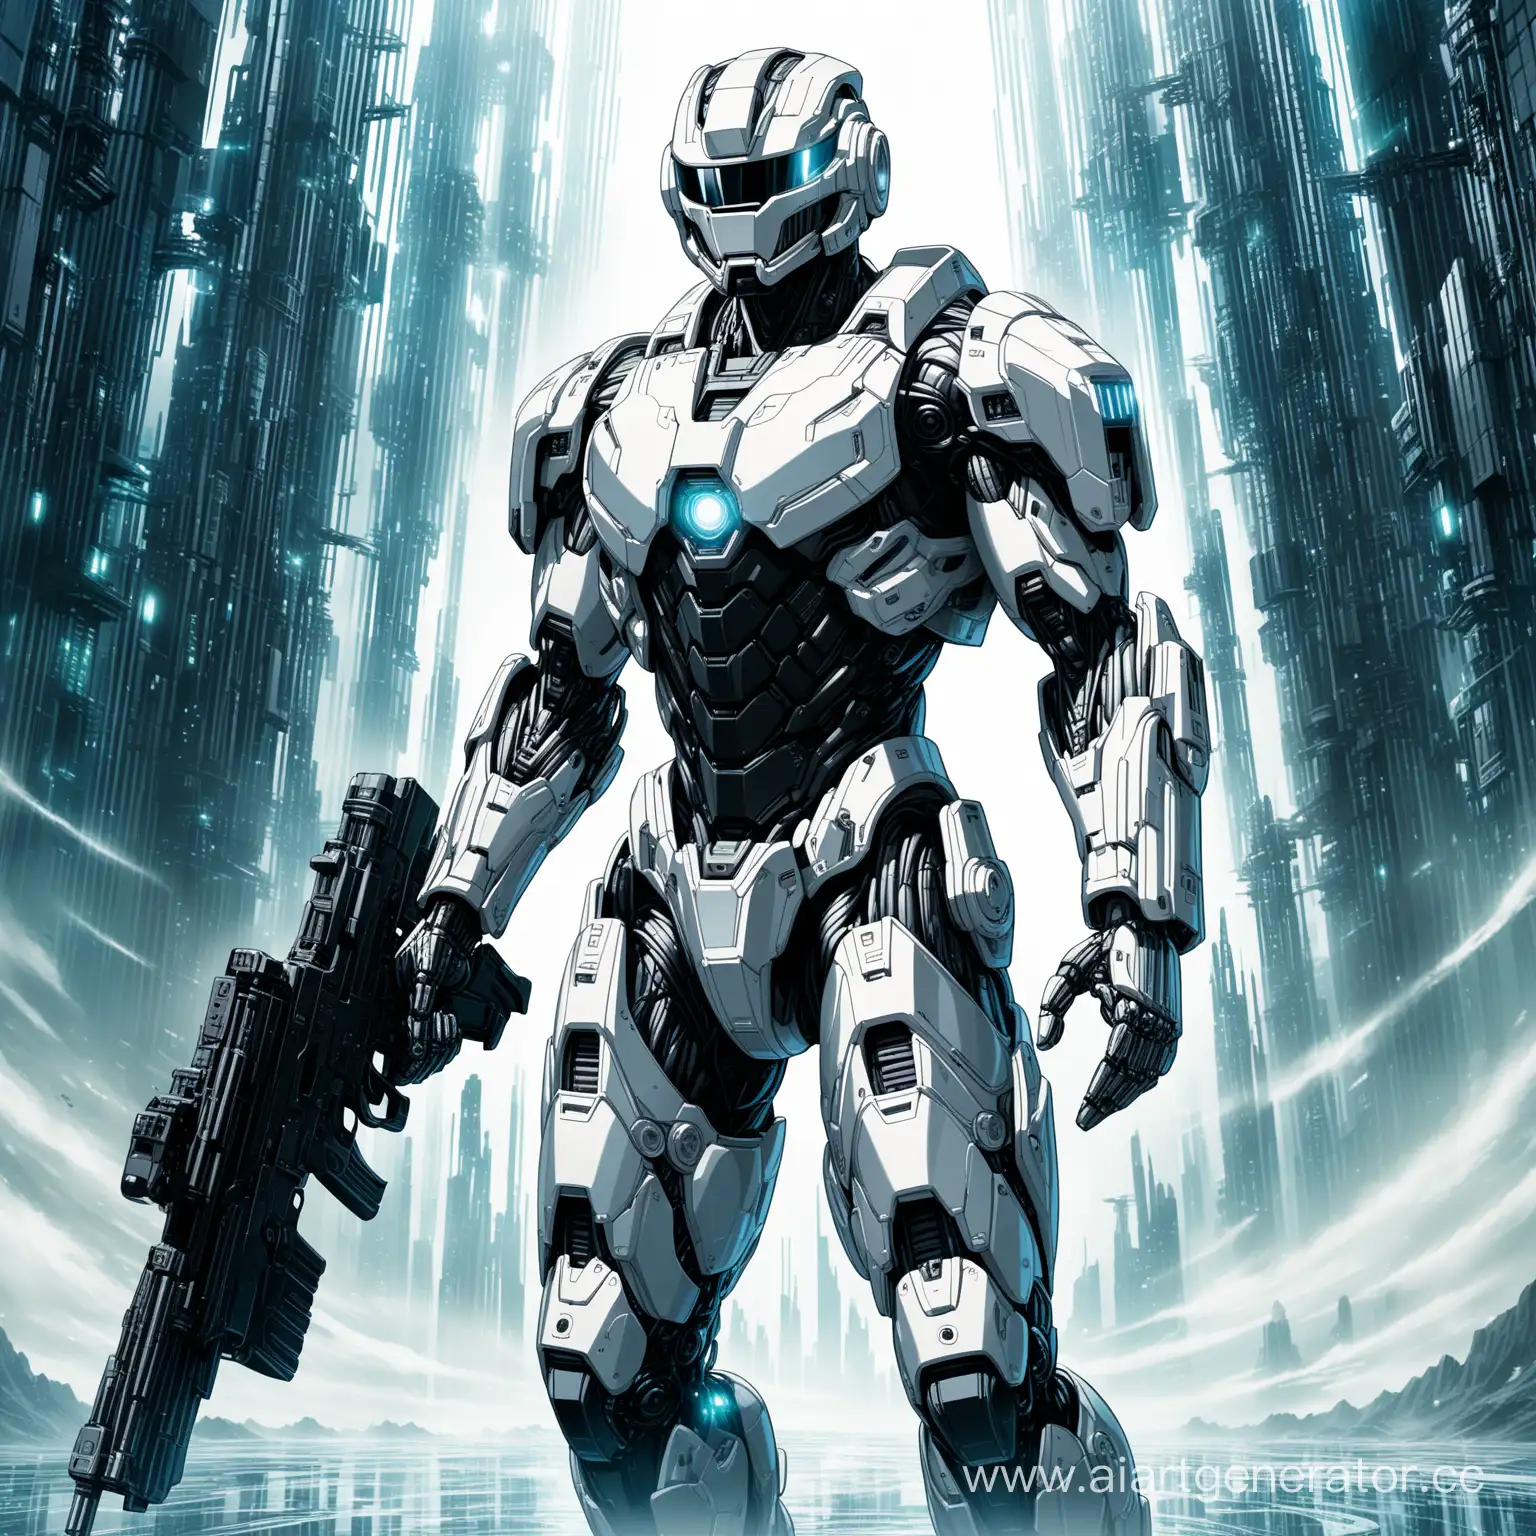 В позе прыжка, Высокотехнологичный, брутальный, мощный, тяжело бронированный белый костюм Robocop, имеющий дополнительную усиленную броню в стиле Robocopс человеческим лицом, оснащен самыми передавшими технологиями во вселенной, Футуристичные пушки на плечах, с огромной пушкой в руке, дополнительное вооружение по всему телу, турбинные двигатели Robocop далекого будущего,  открытый шлем, широкие плечи, телосложением бодибилдера, Robocop (вид в полный рост: 1.1), фокус на ступни (крупный план: 1.2), созданный в стиле - Transformer (многократная экспозиция: 1.2), отображение текстур, сложная постобработка, научно-фантастический технический реализм, (сюрреализм: 1.2), (гипер высокое качество 8к). Создай завораживающую смесь механических и высокотехнологичных элементов, эфирных и абстрактных, сочетая металлические элементы с текстурами, похожими на человеческие, слияние человеческого лица и кибер-костюма Robocop, динамичные ракурсы съемки, высоко детализированные металлические мелкие детали, фантастические очертания, цифровой шедевр, глубокие тени и светящиеся блики серебренного металла